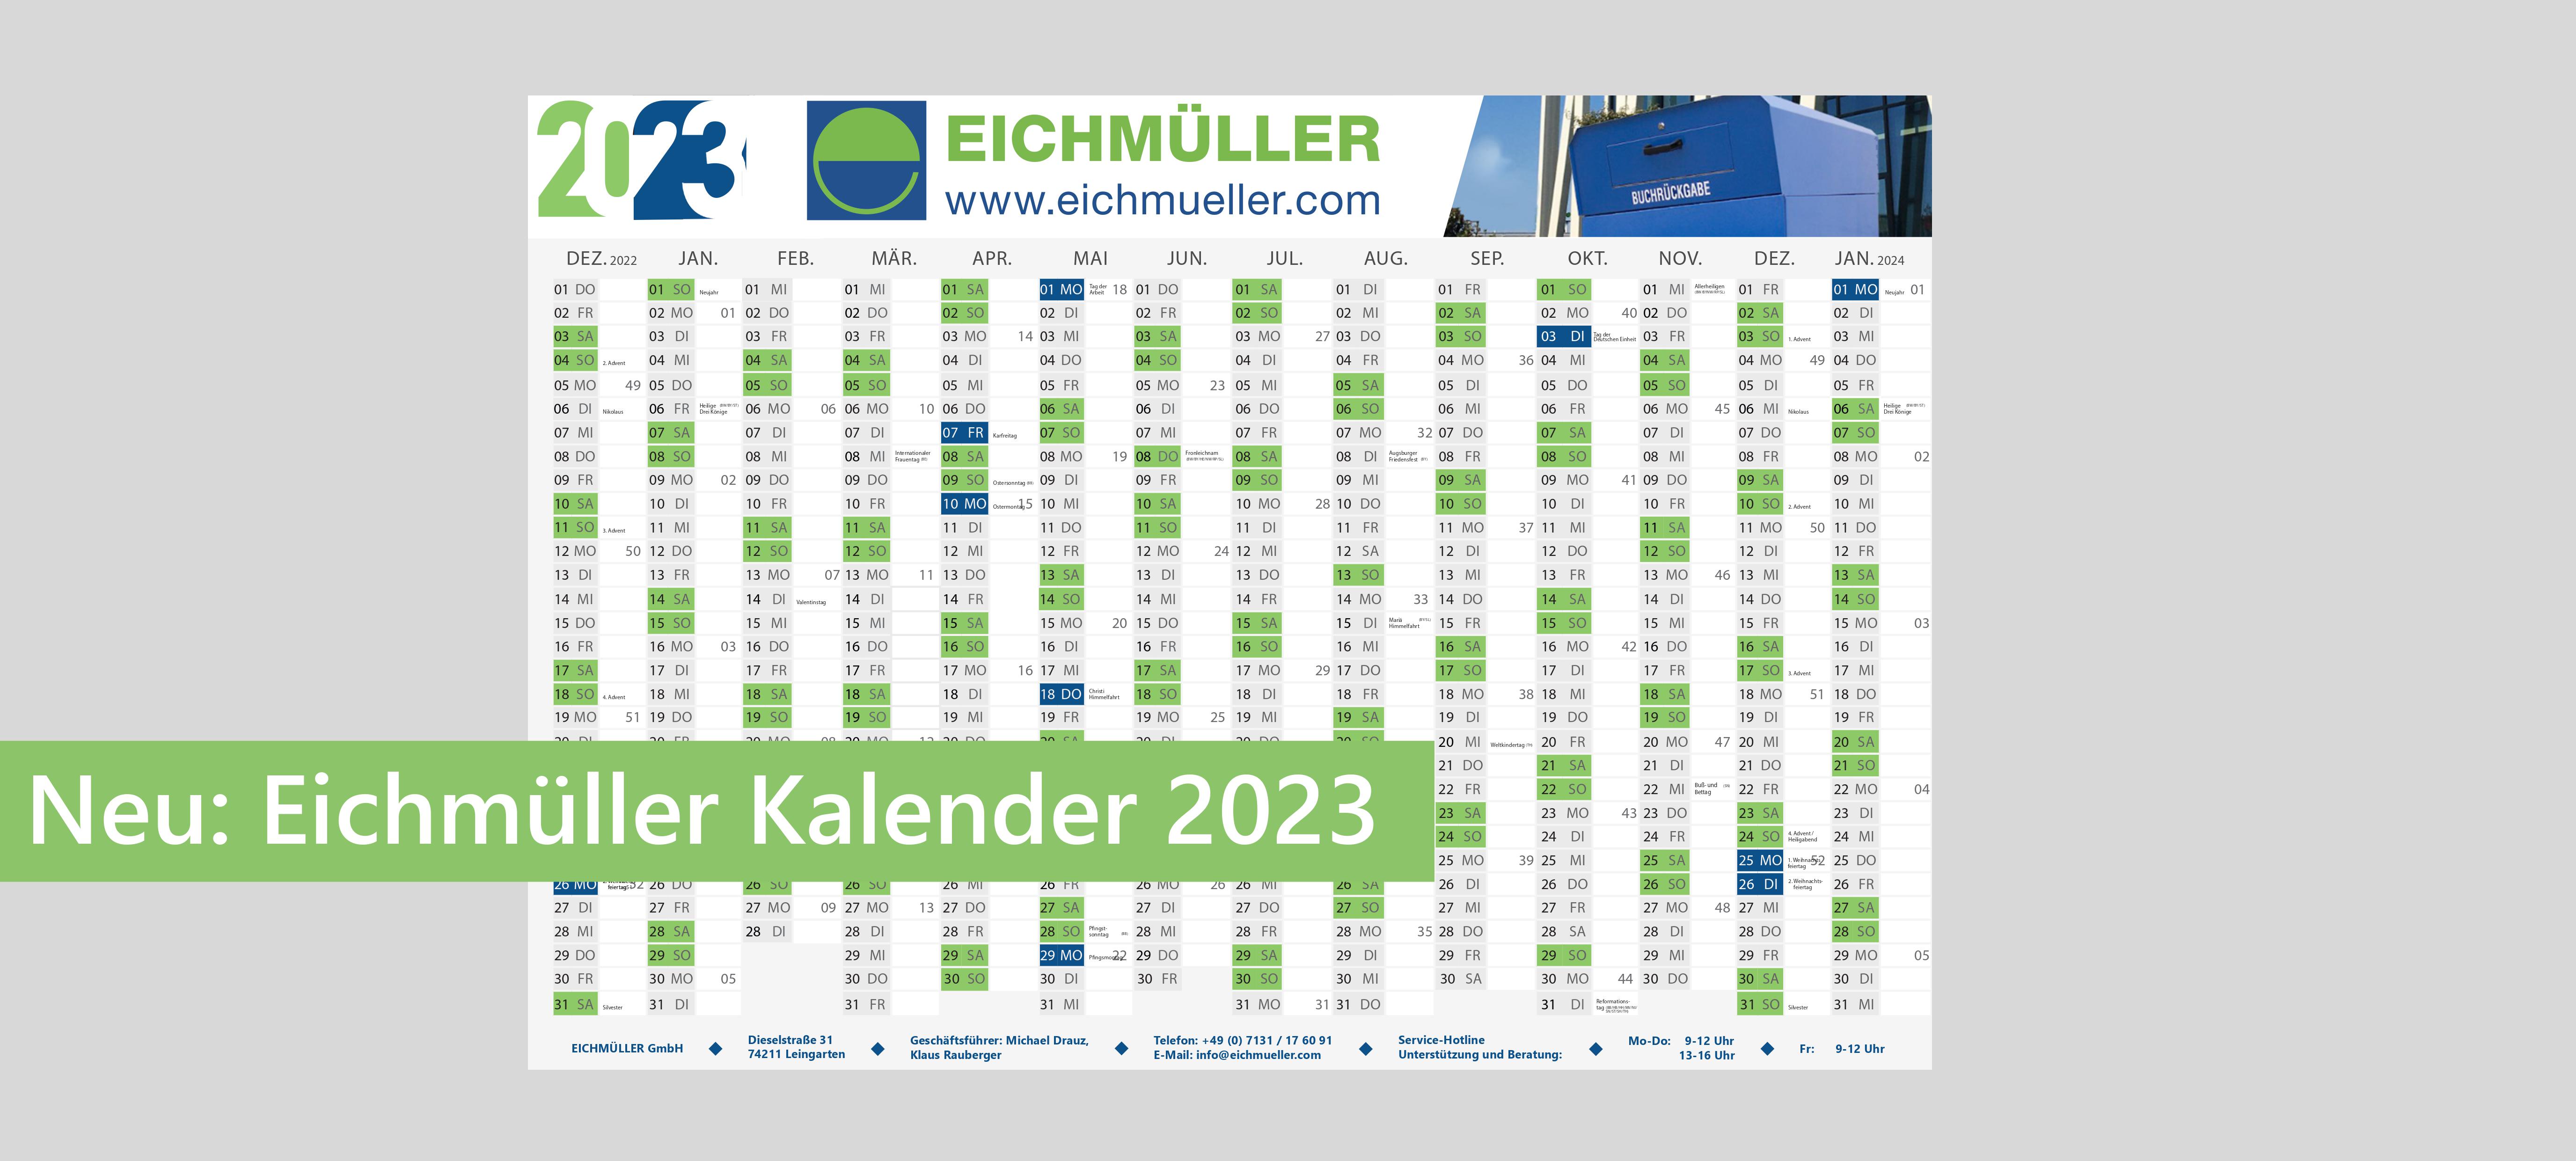 Der neue EICHMÜLLER Kalender 2023